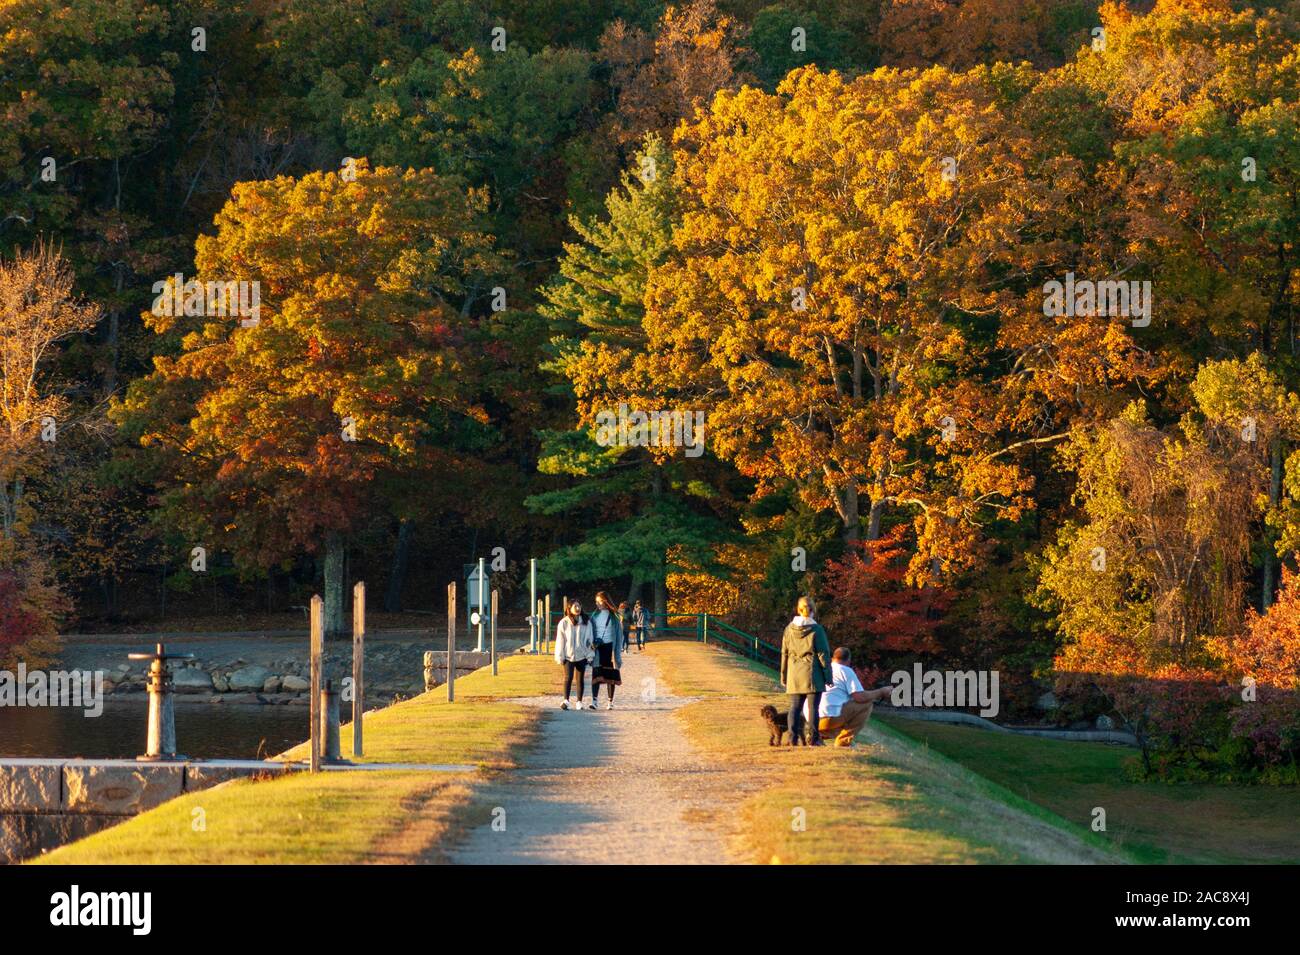 Les gens se promènent sur un barrage terrestre, sous une lumière de coucher de soleil. Feuillage d'automne vibrant d'une forêt mixte en arrière-plan. Parc national de Hopkinton, ma, États-Unis Banque D'Images